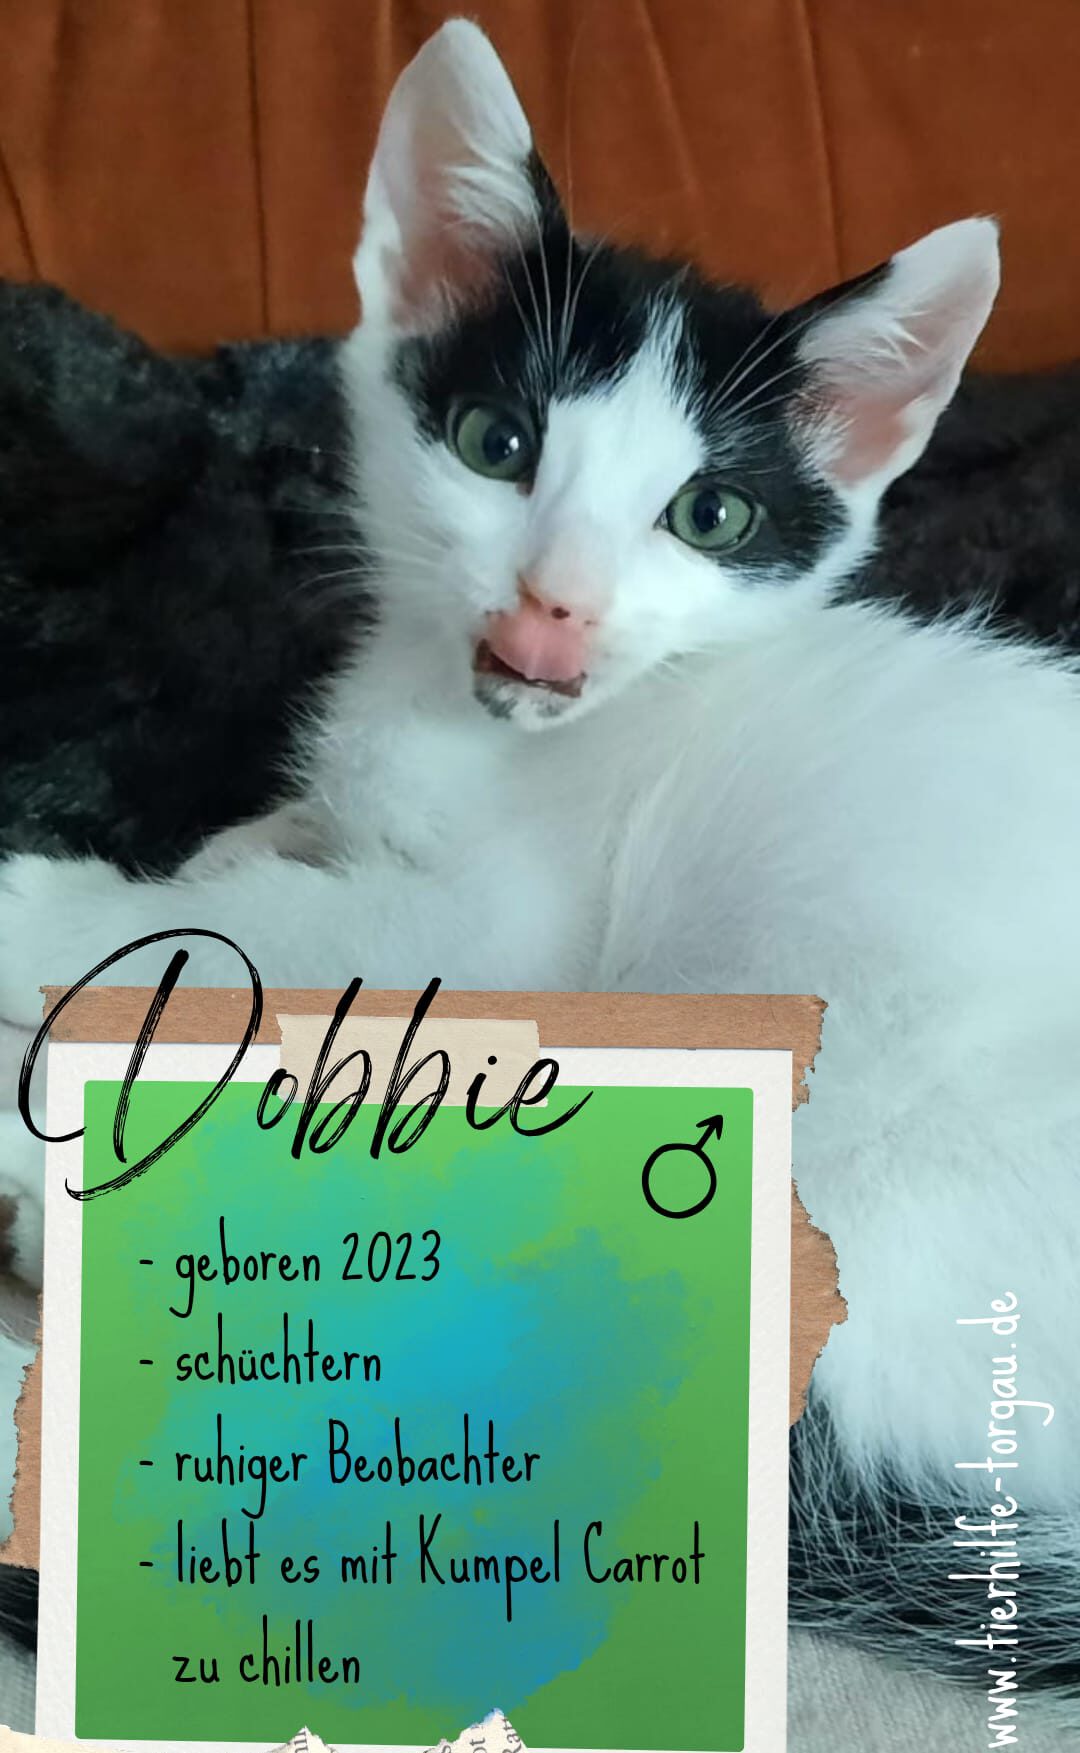 Dobbie